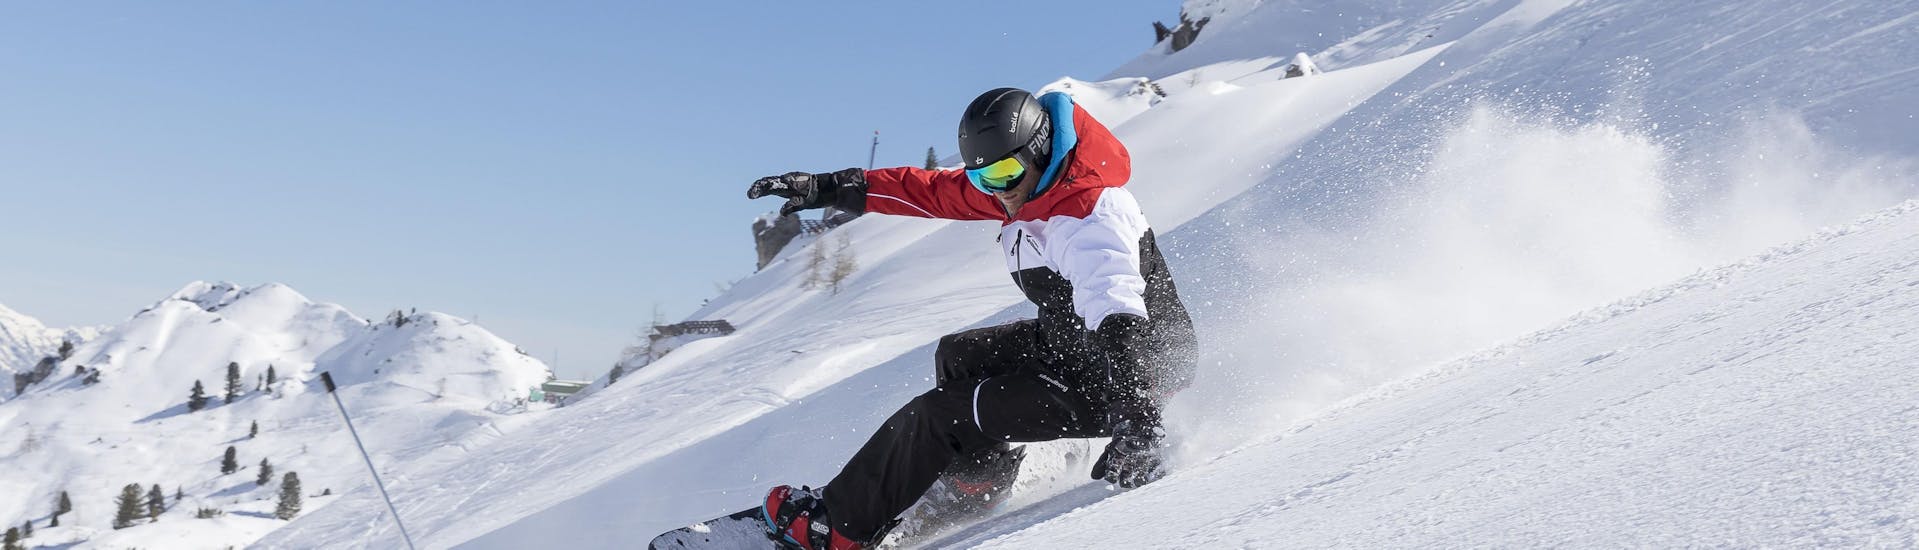 Een snowboarder scheurt van een helling tijdens zijn snowboardlessen voor gevorderden in Stubai.